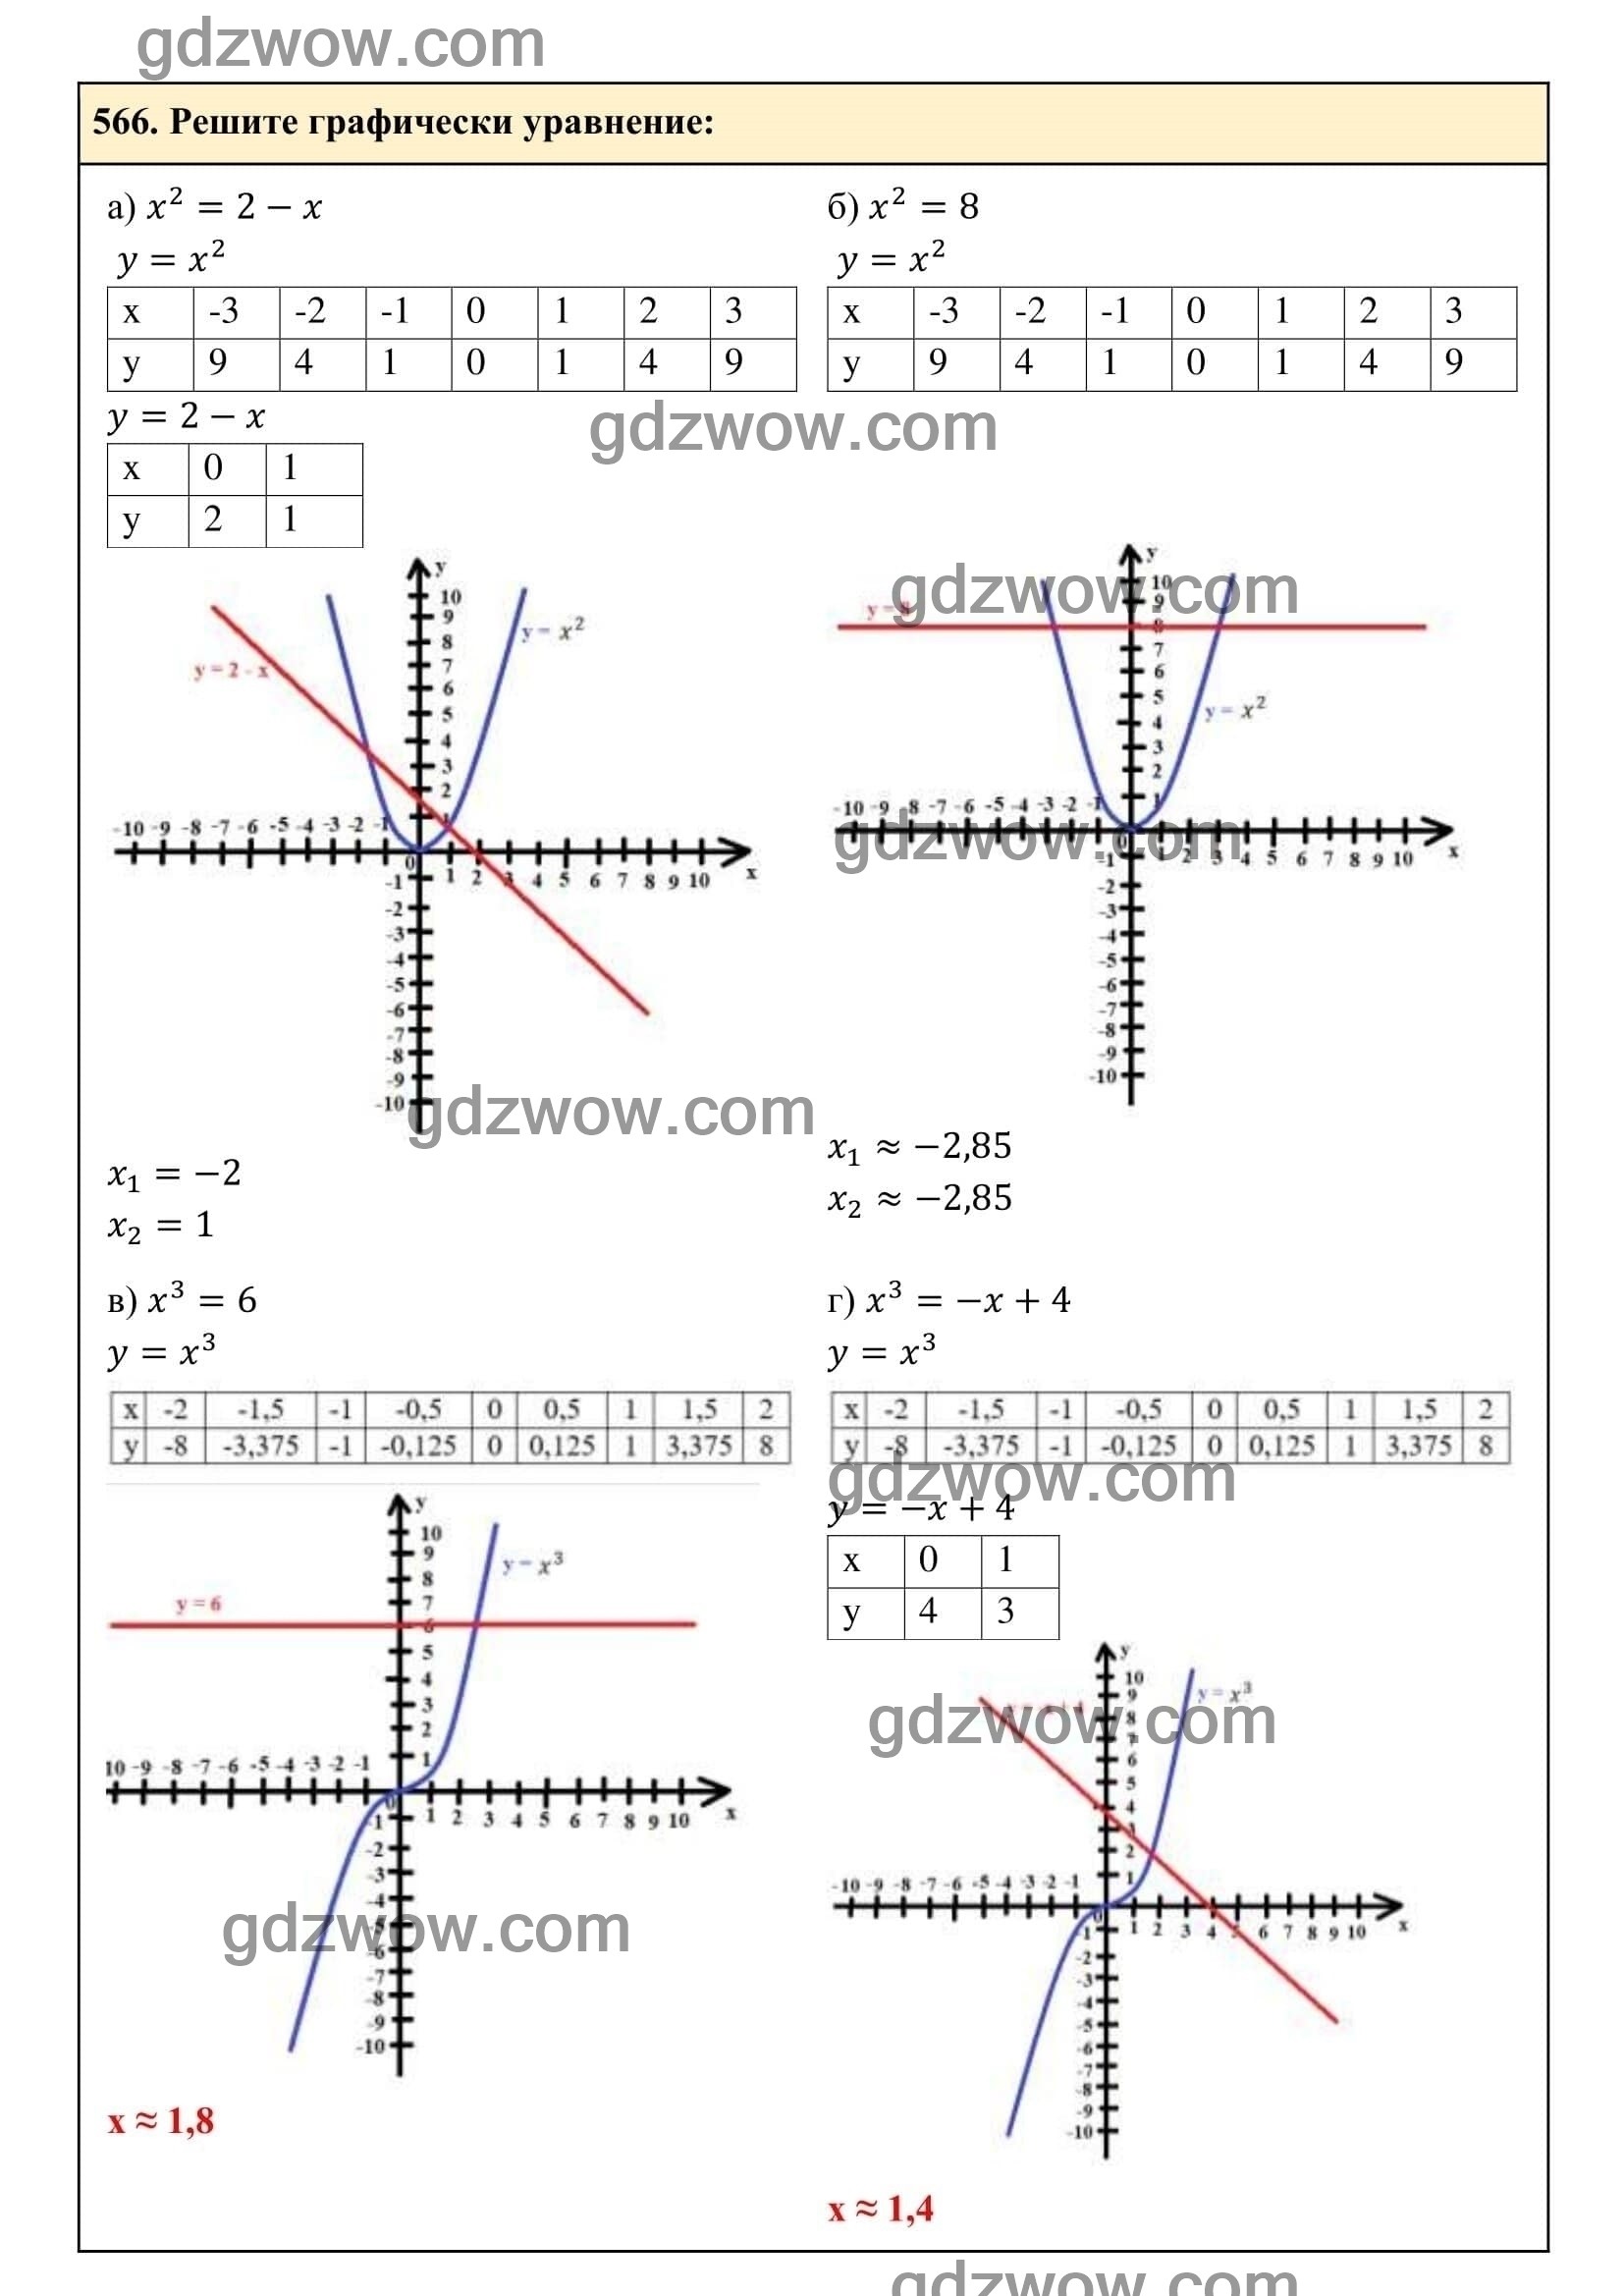 Упражнение 566 - ГДЗ по Алгебре 7 класс Учебник Макарычев (решебник) - GDZwow